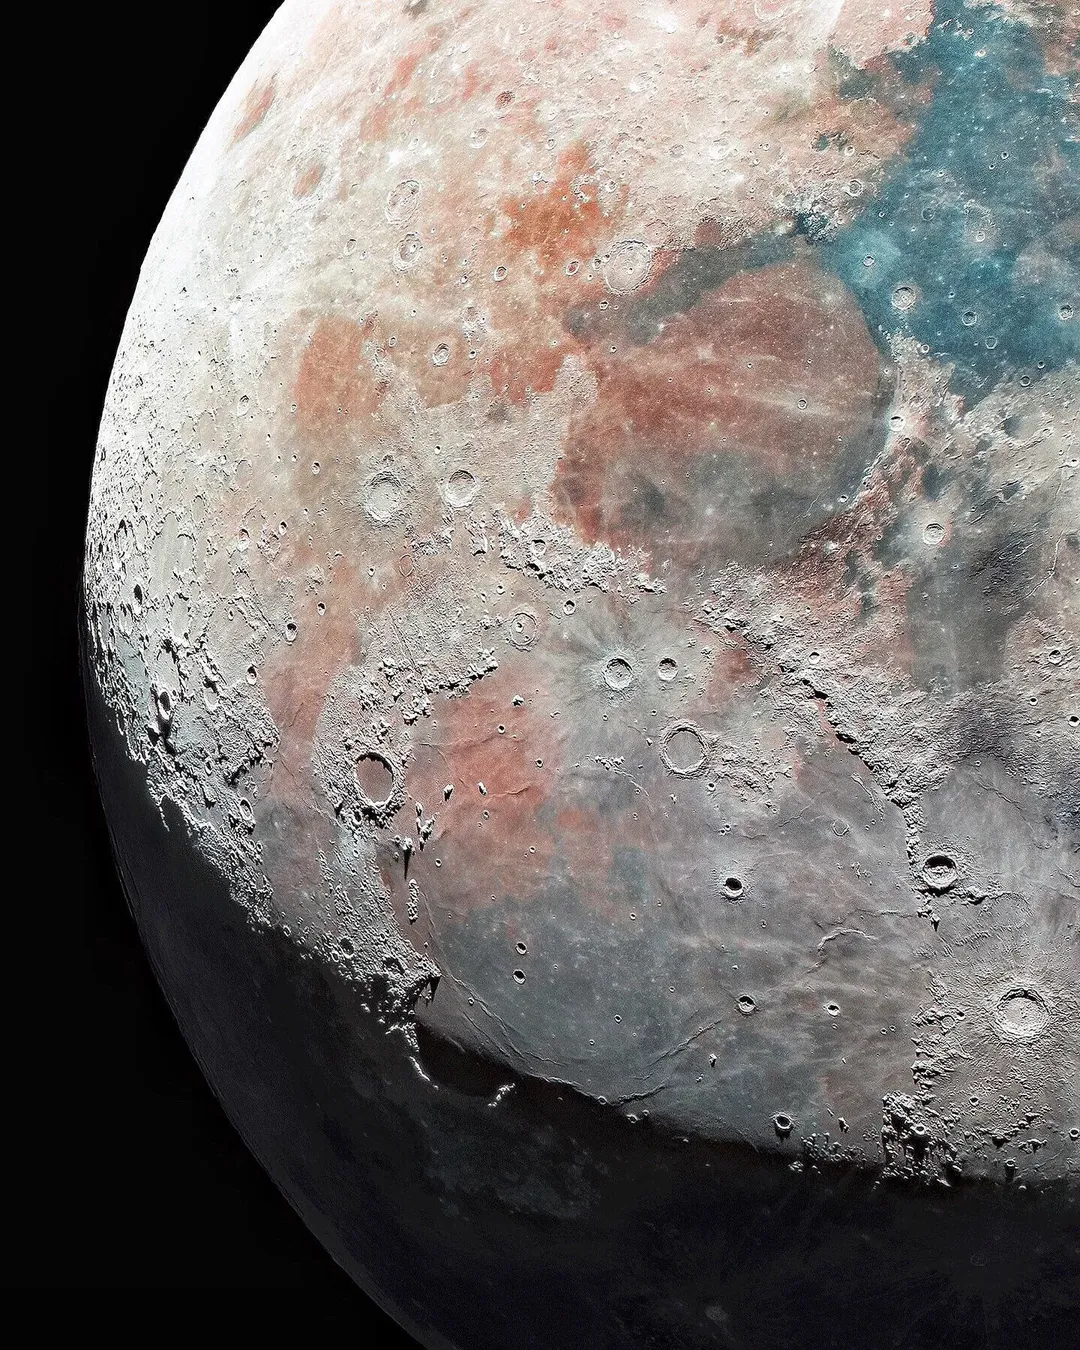 Bức ảnh chụp bề mặt mặt trăng bằng Canon EOS 1200D chi tiết đến kinh ngạc, khiến Internet phát sốt